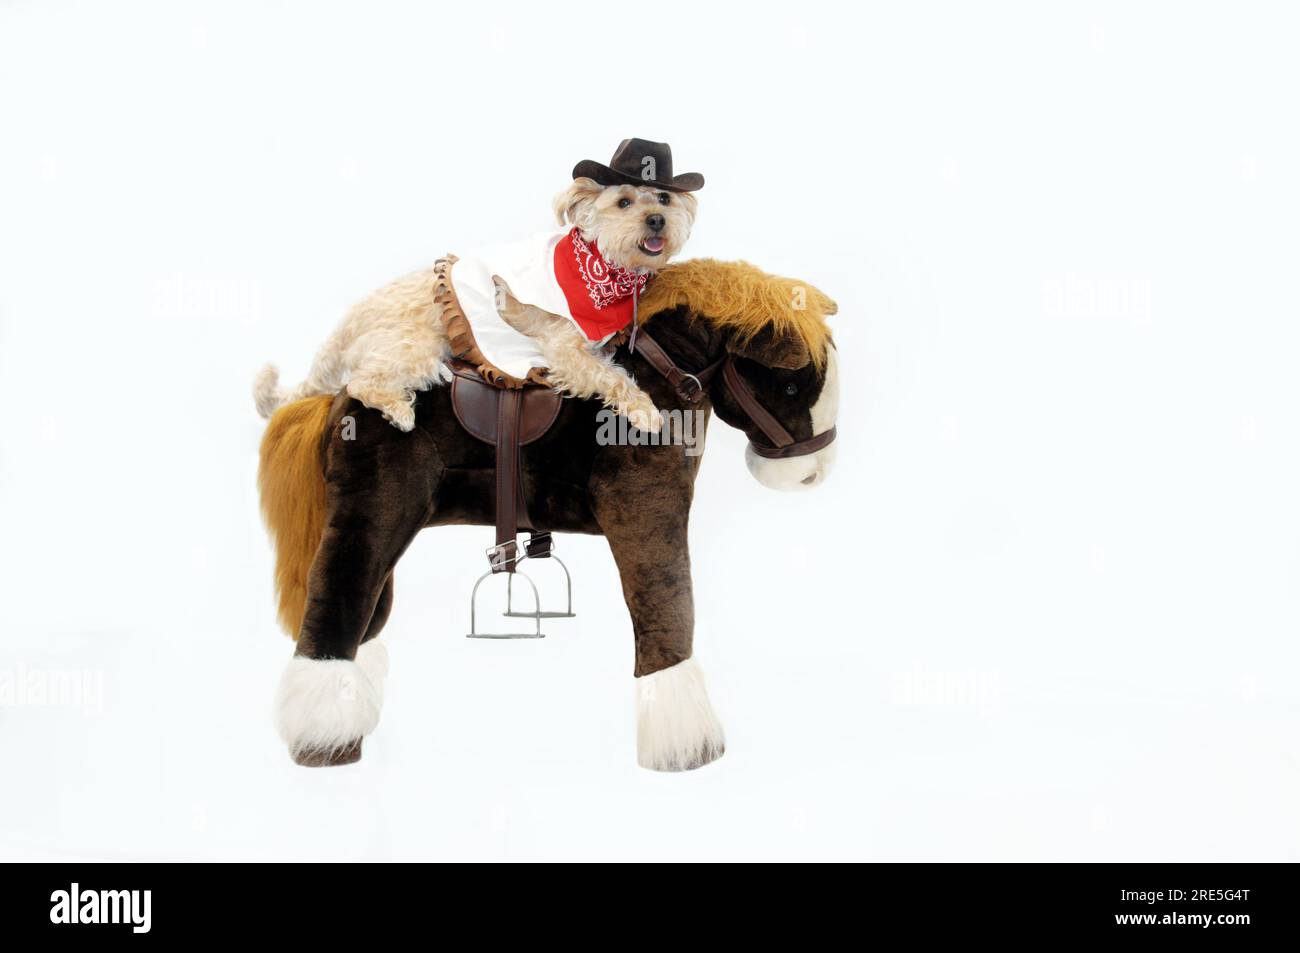 Les promenades pour chiens Silkypoo à cheval sur un poney en peluche. Elle est vêtue de vêtements occidentaux avec bandana rouge et chapeau de cow-boy. Banque D'Images